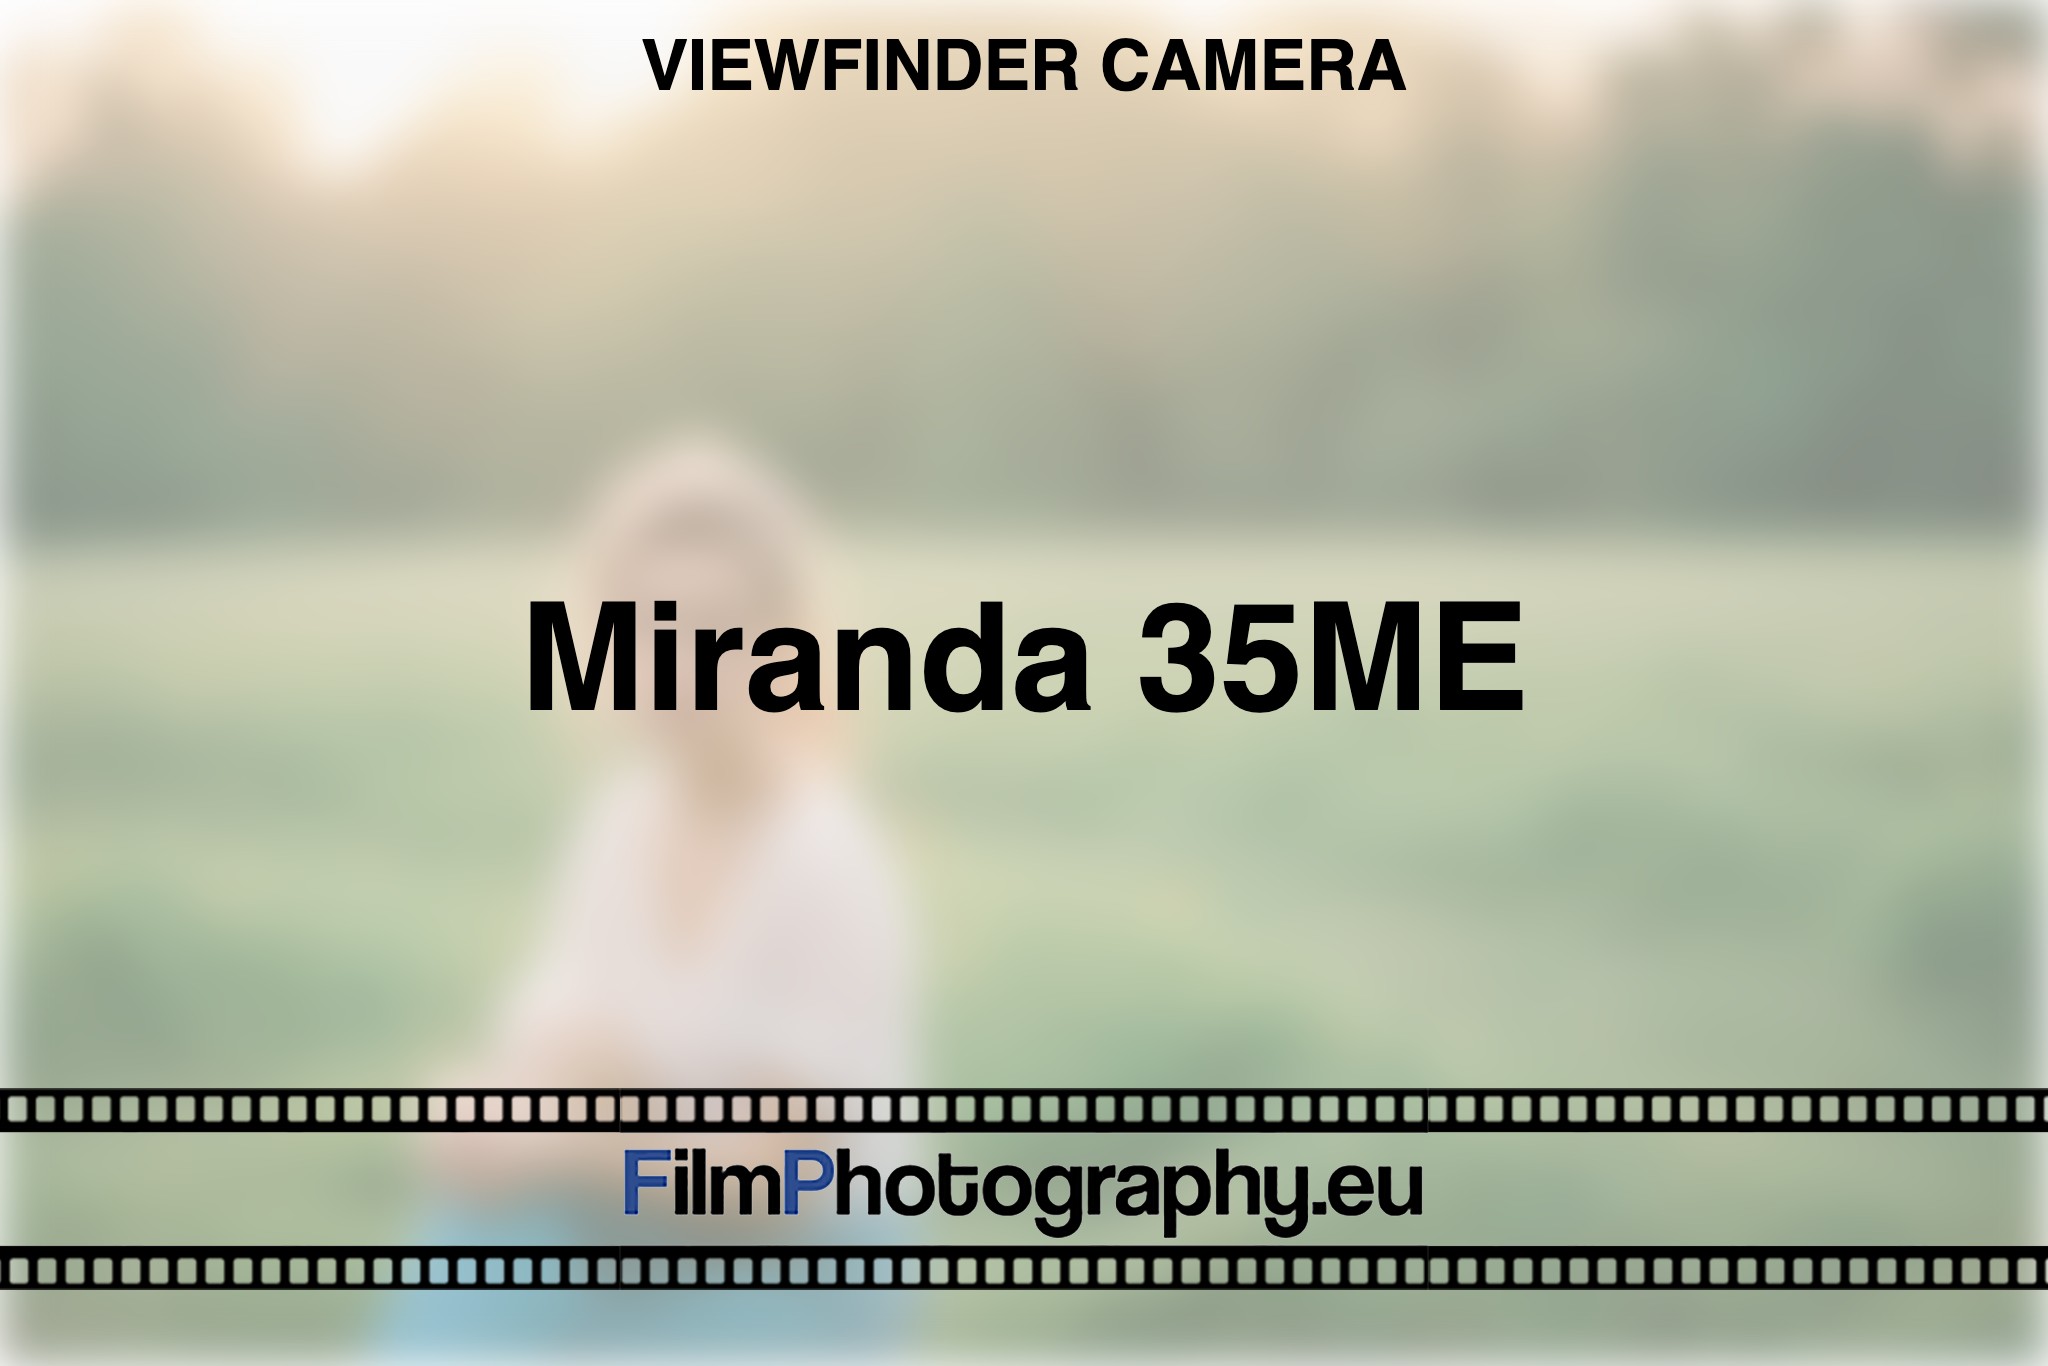 miranda-35me-viewfinder-camera-bnv